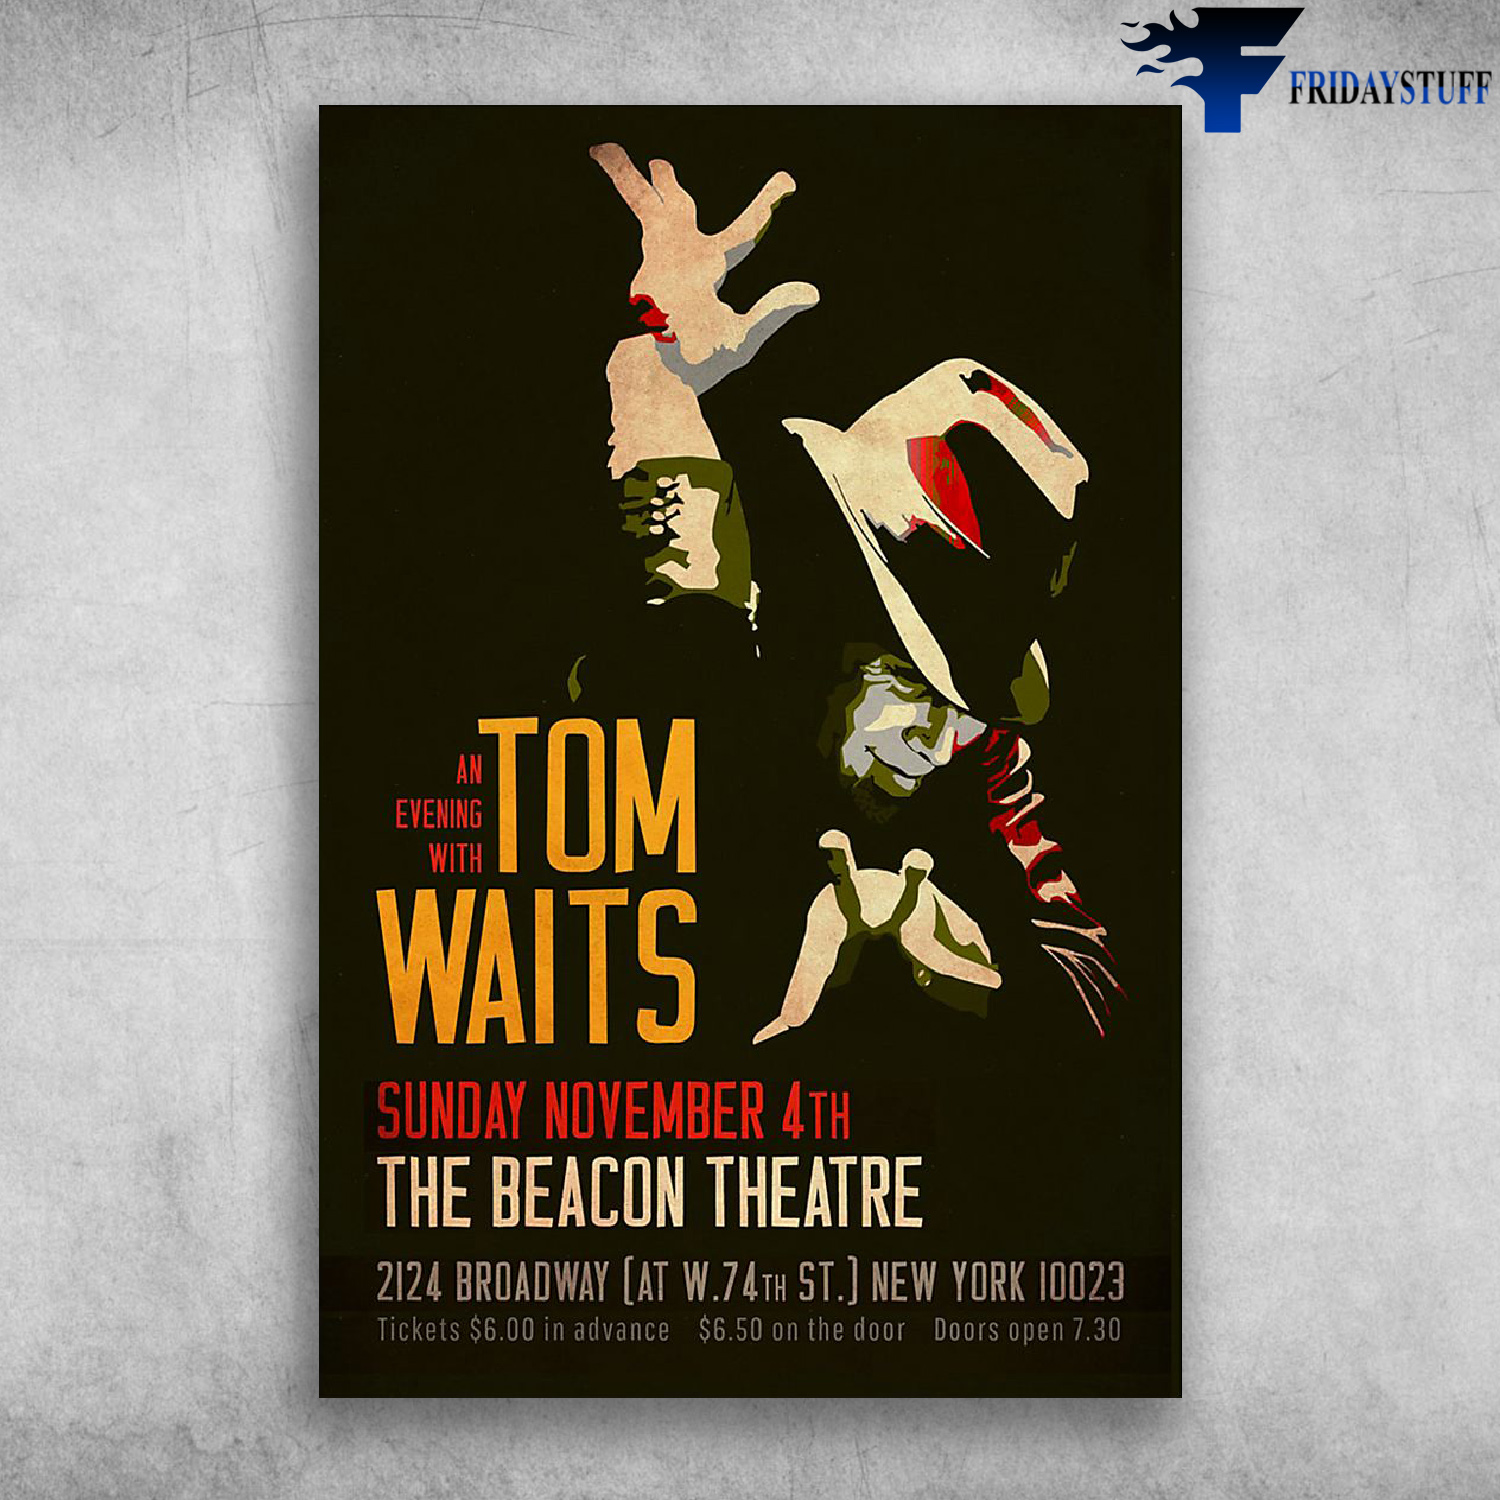 Tom Waits Sunday November 4th The Beacon Theatre